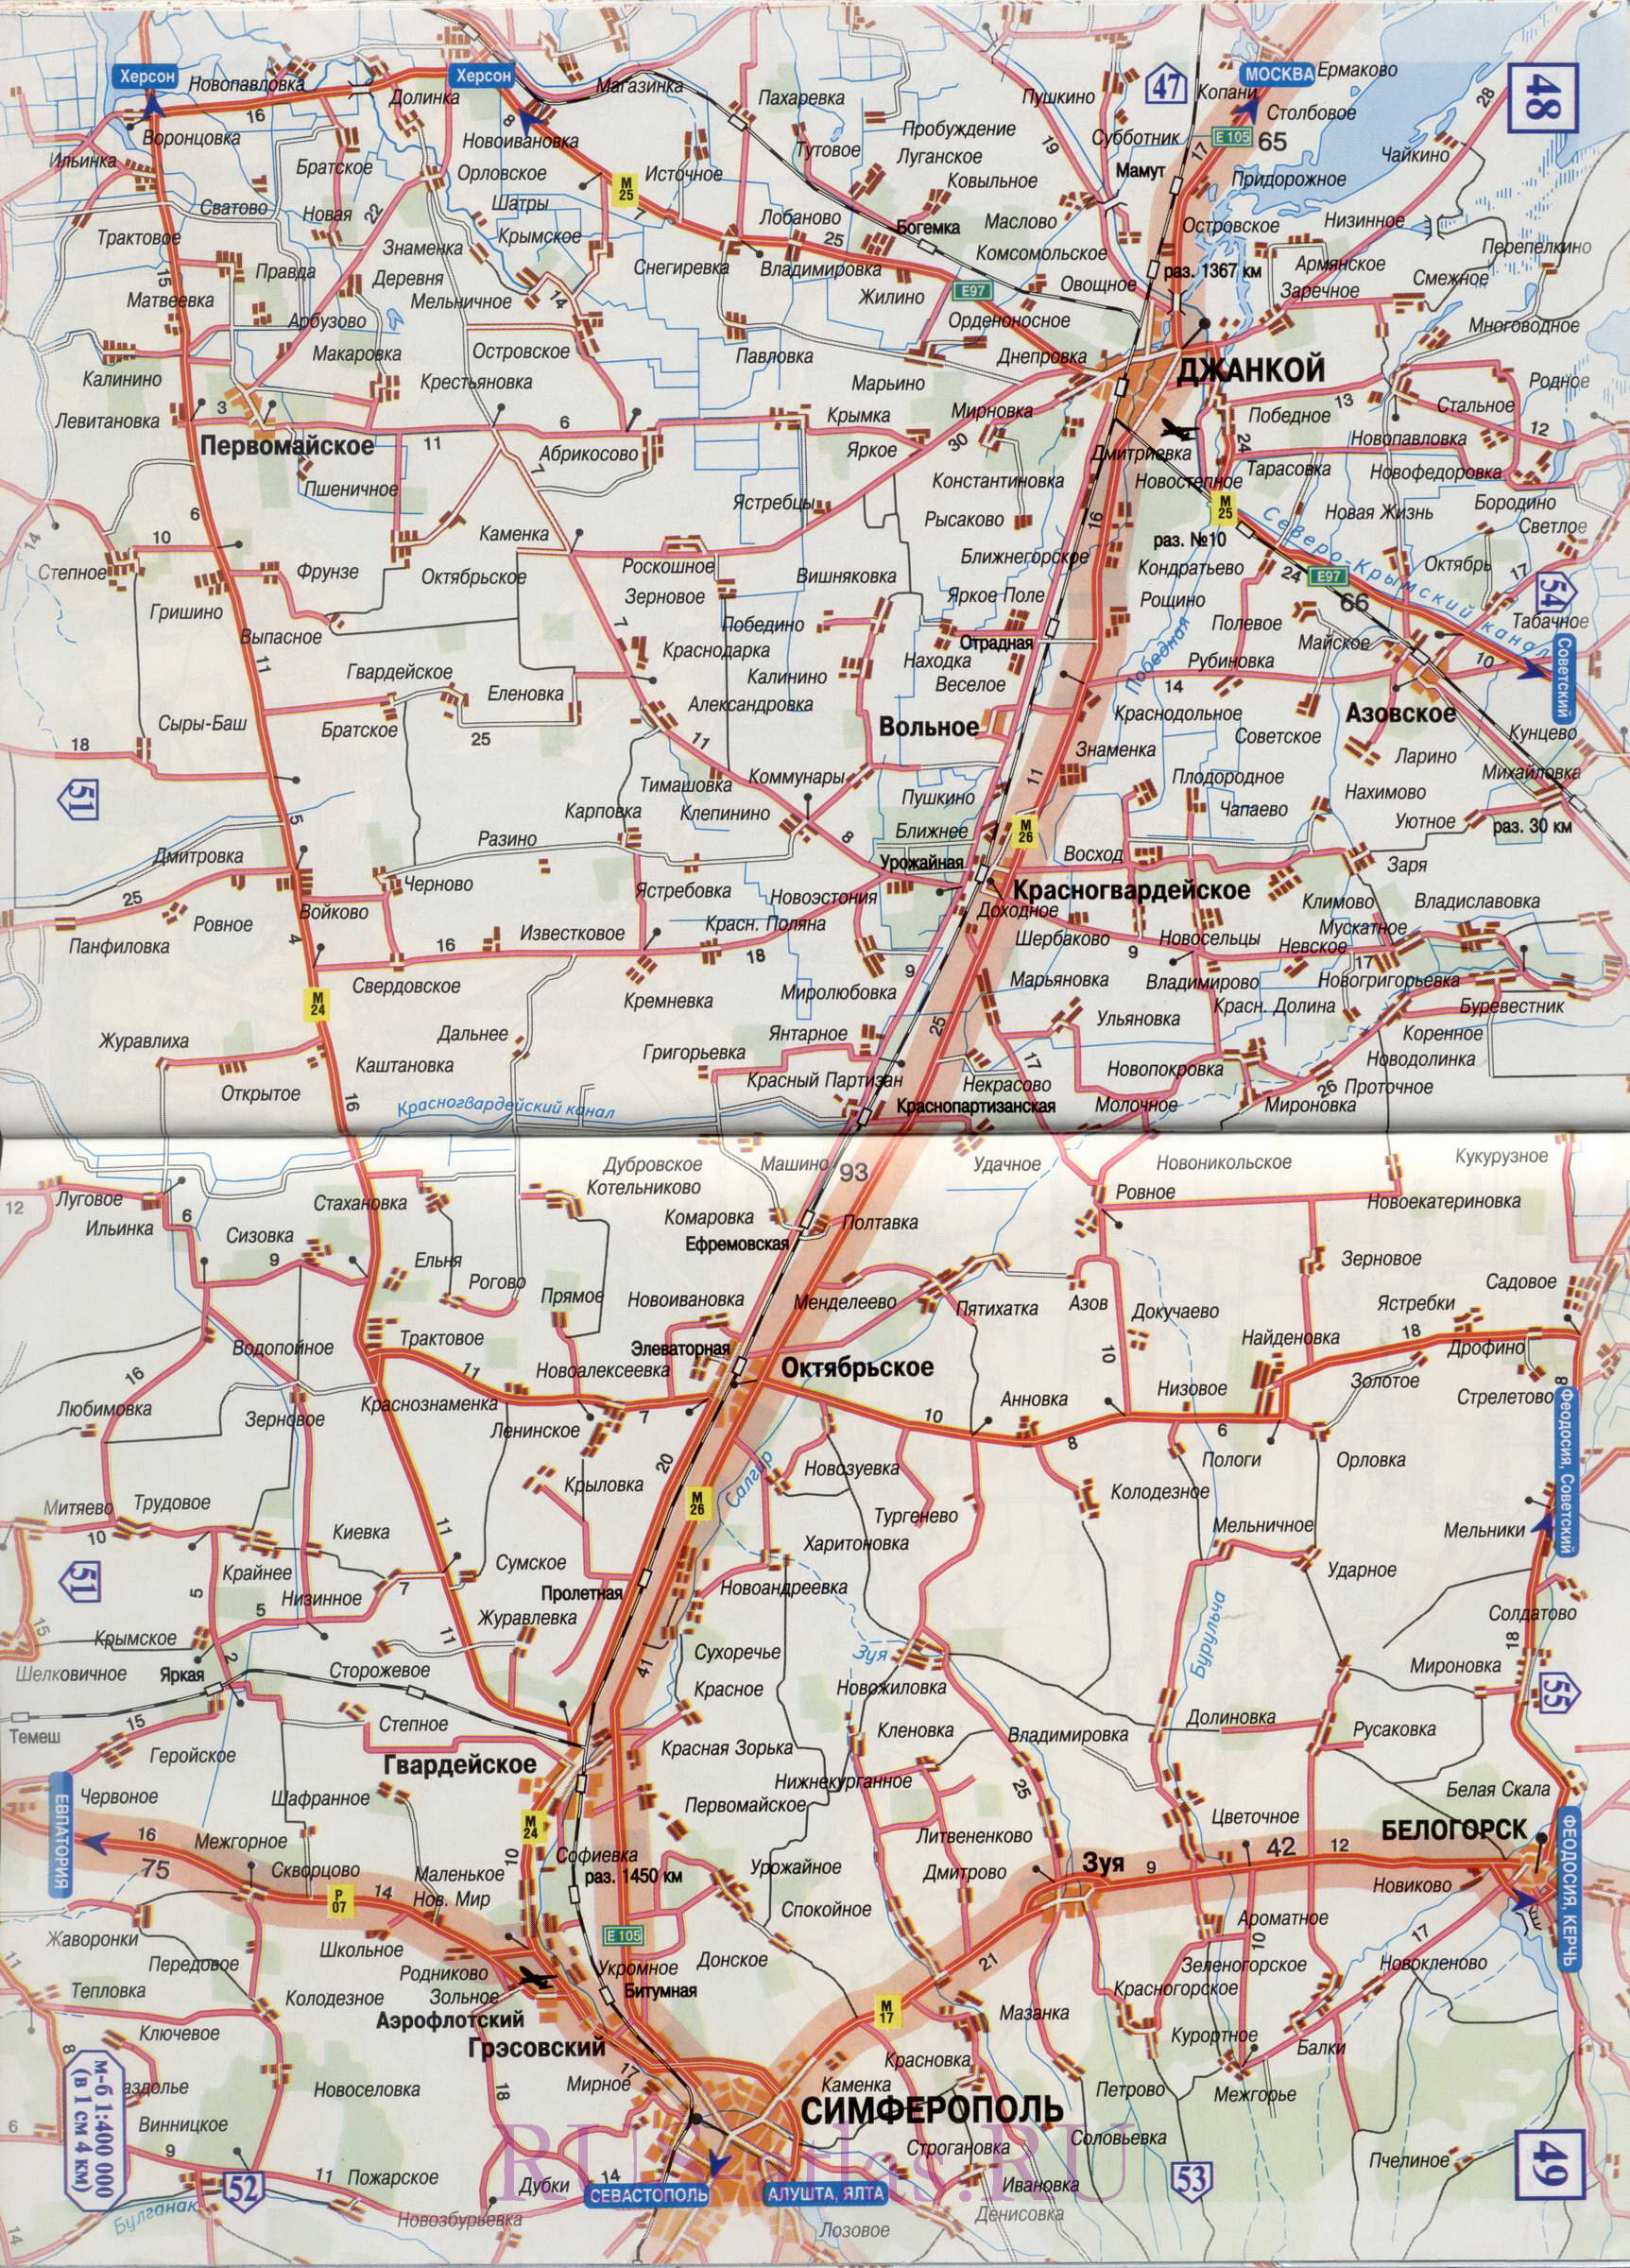 Карта автодороги Запорожье Симферополь. Подробная карта автомобильной трассы М2 на участке от Запорожья до Симферополя, A3 - 